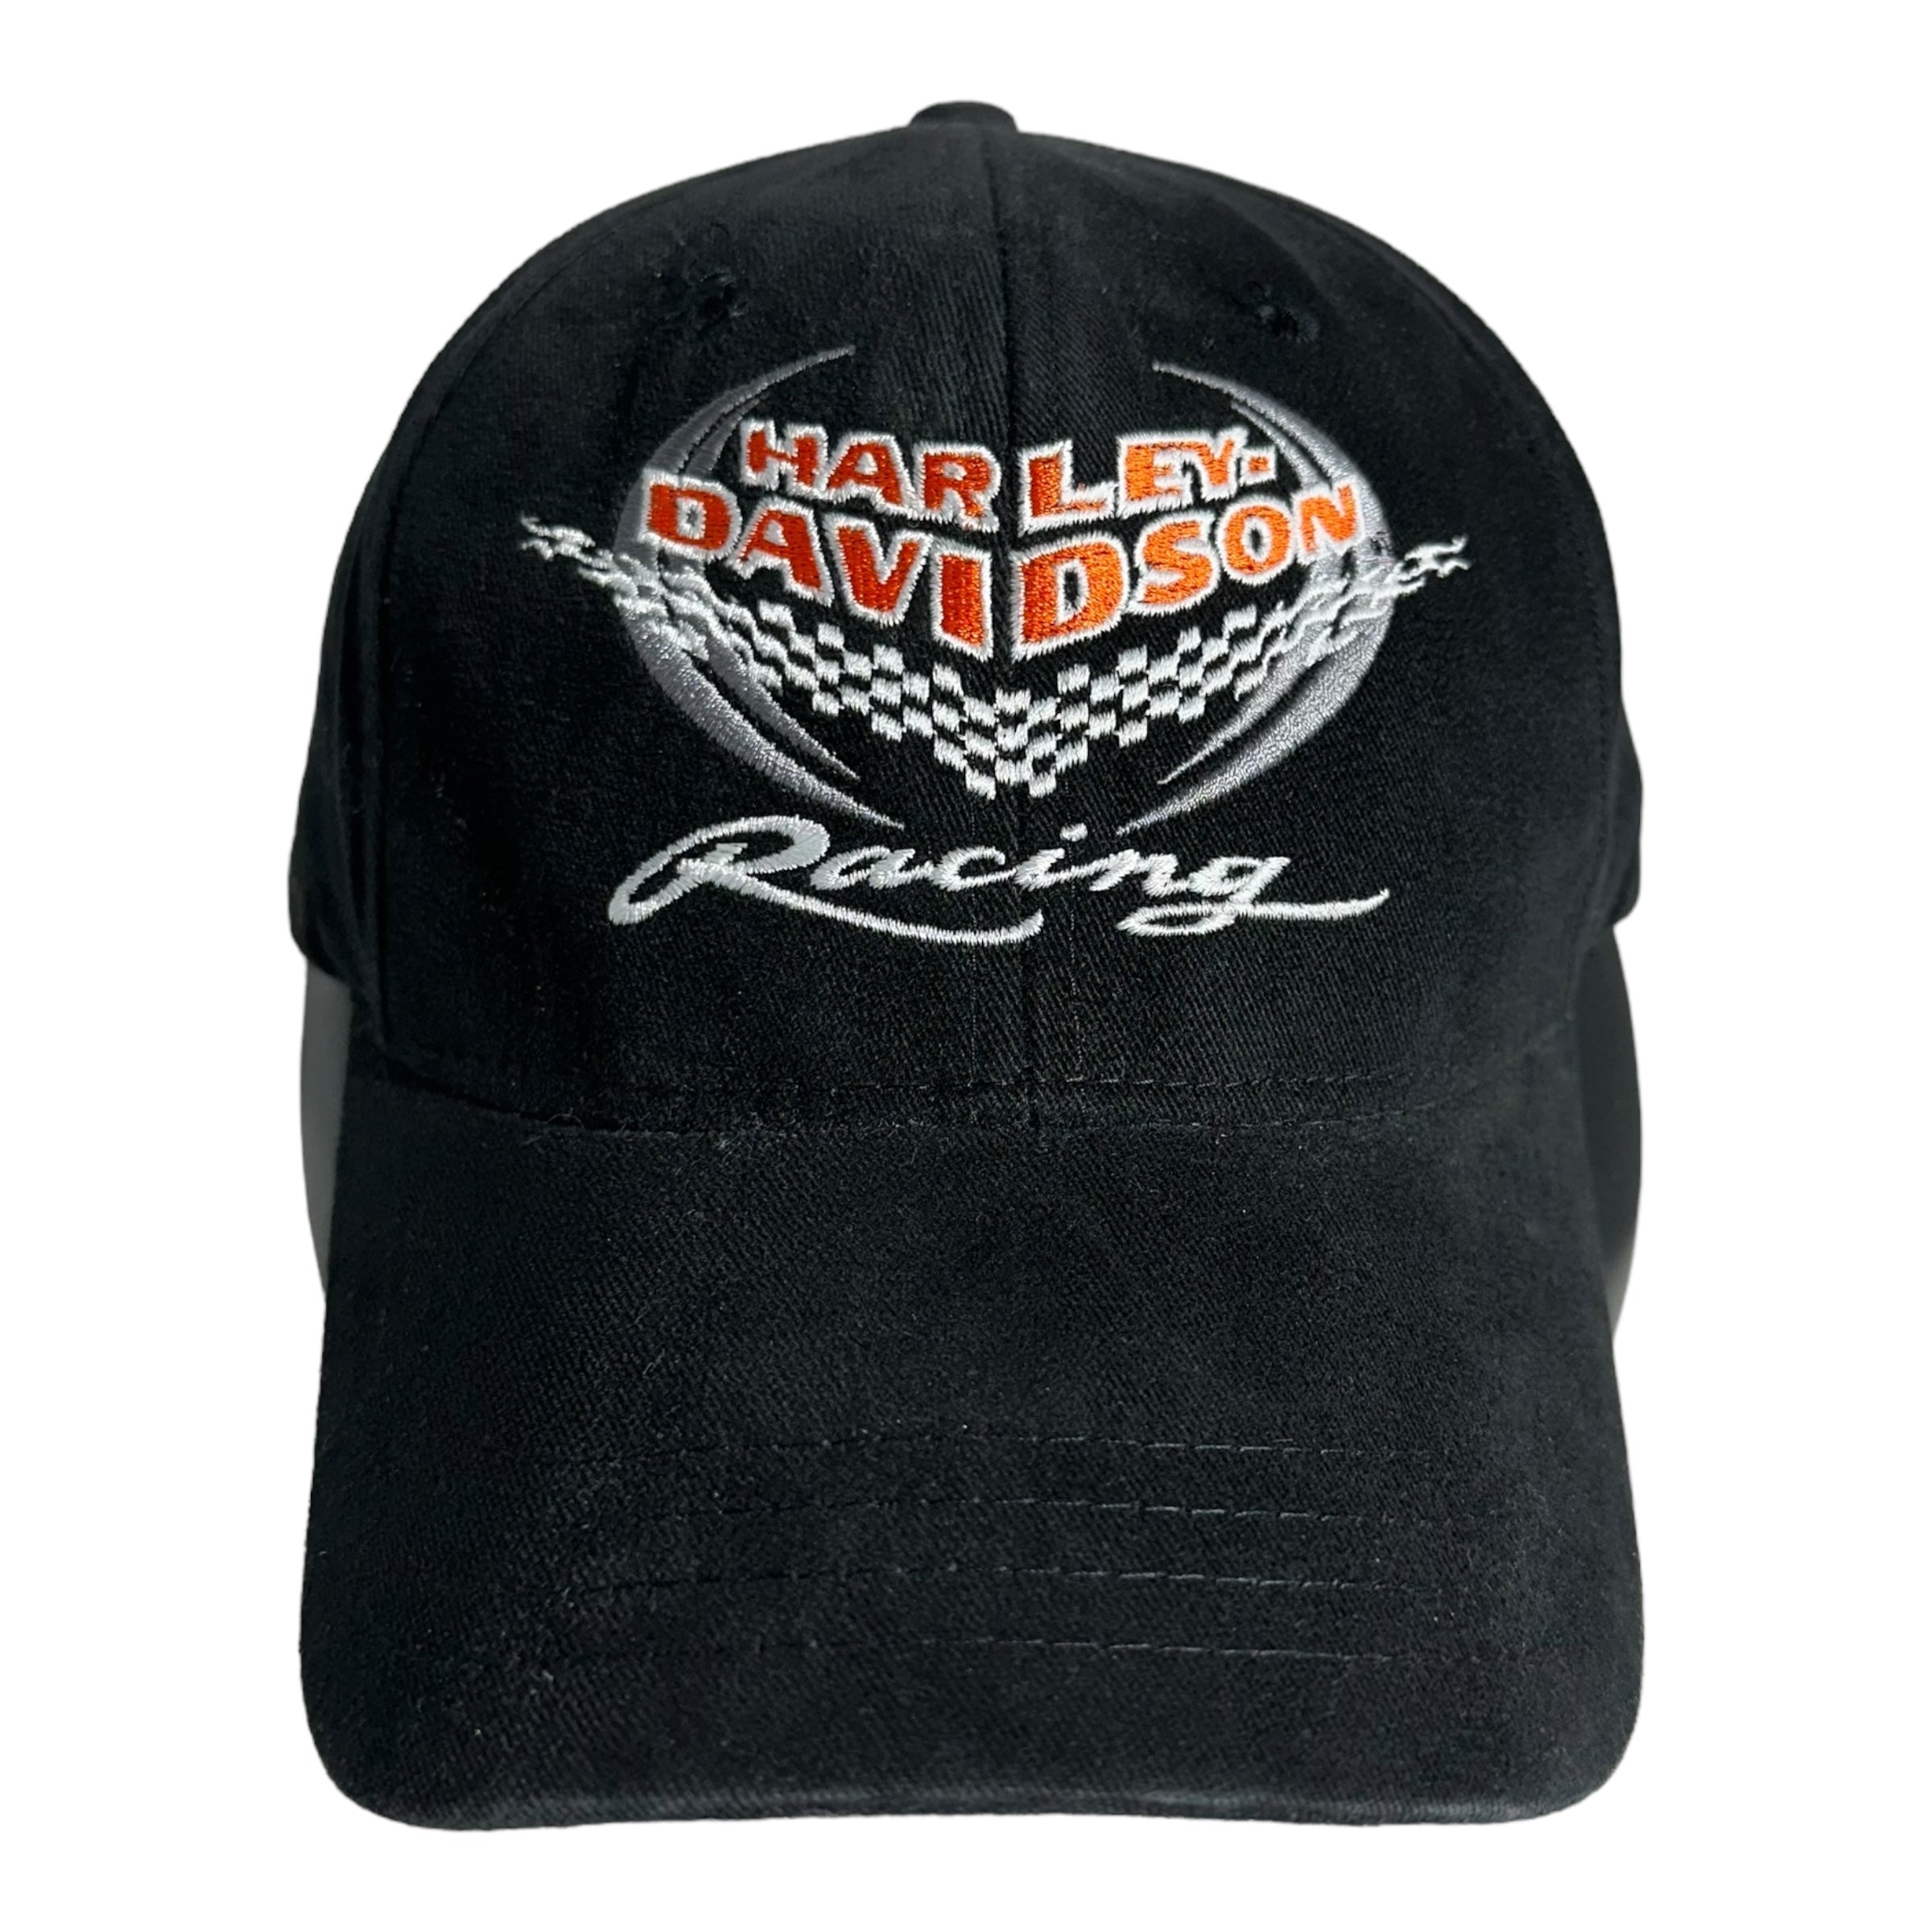 Vintage Harley Davidson Racing Strapback Hat